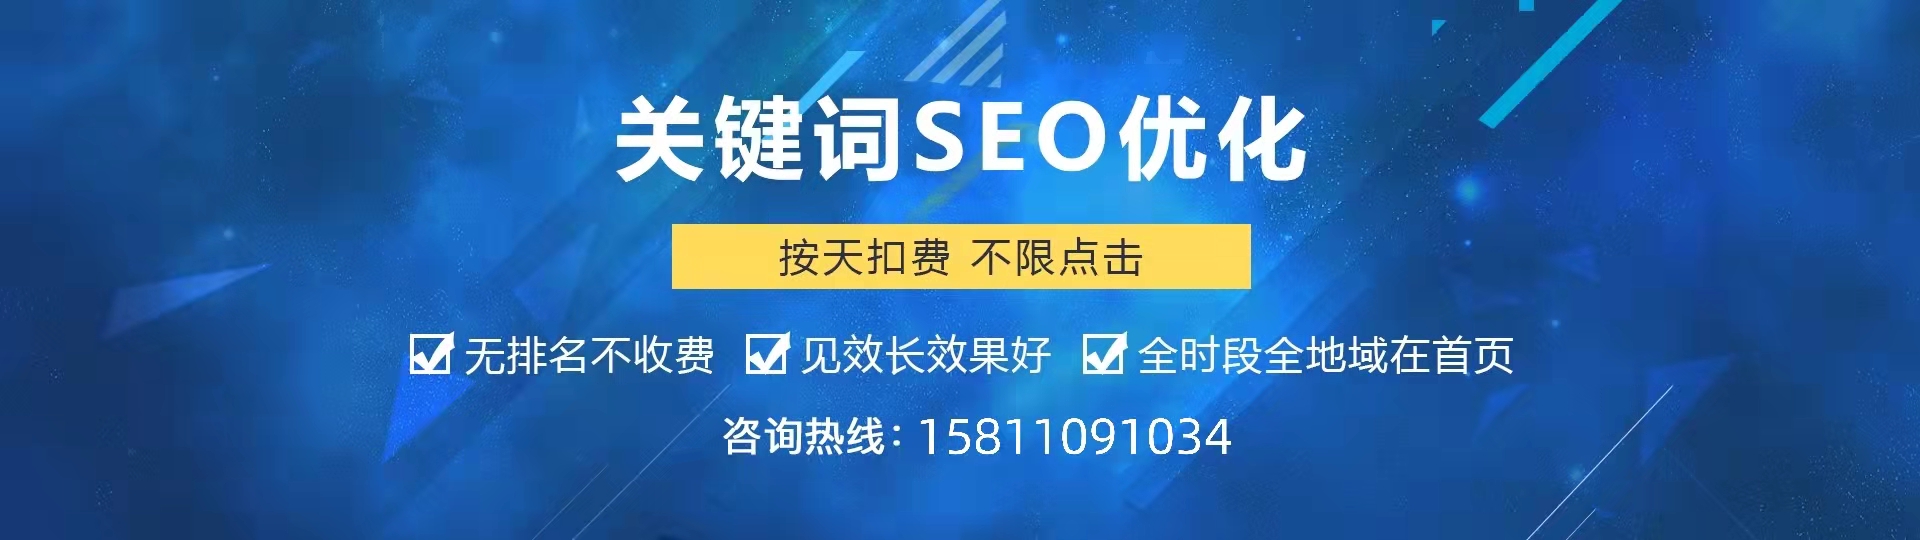 北京网站SEO优化公司,专业的SEO推广外包服务商,新闻稿发布,优檬科技